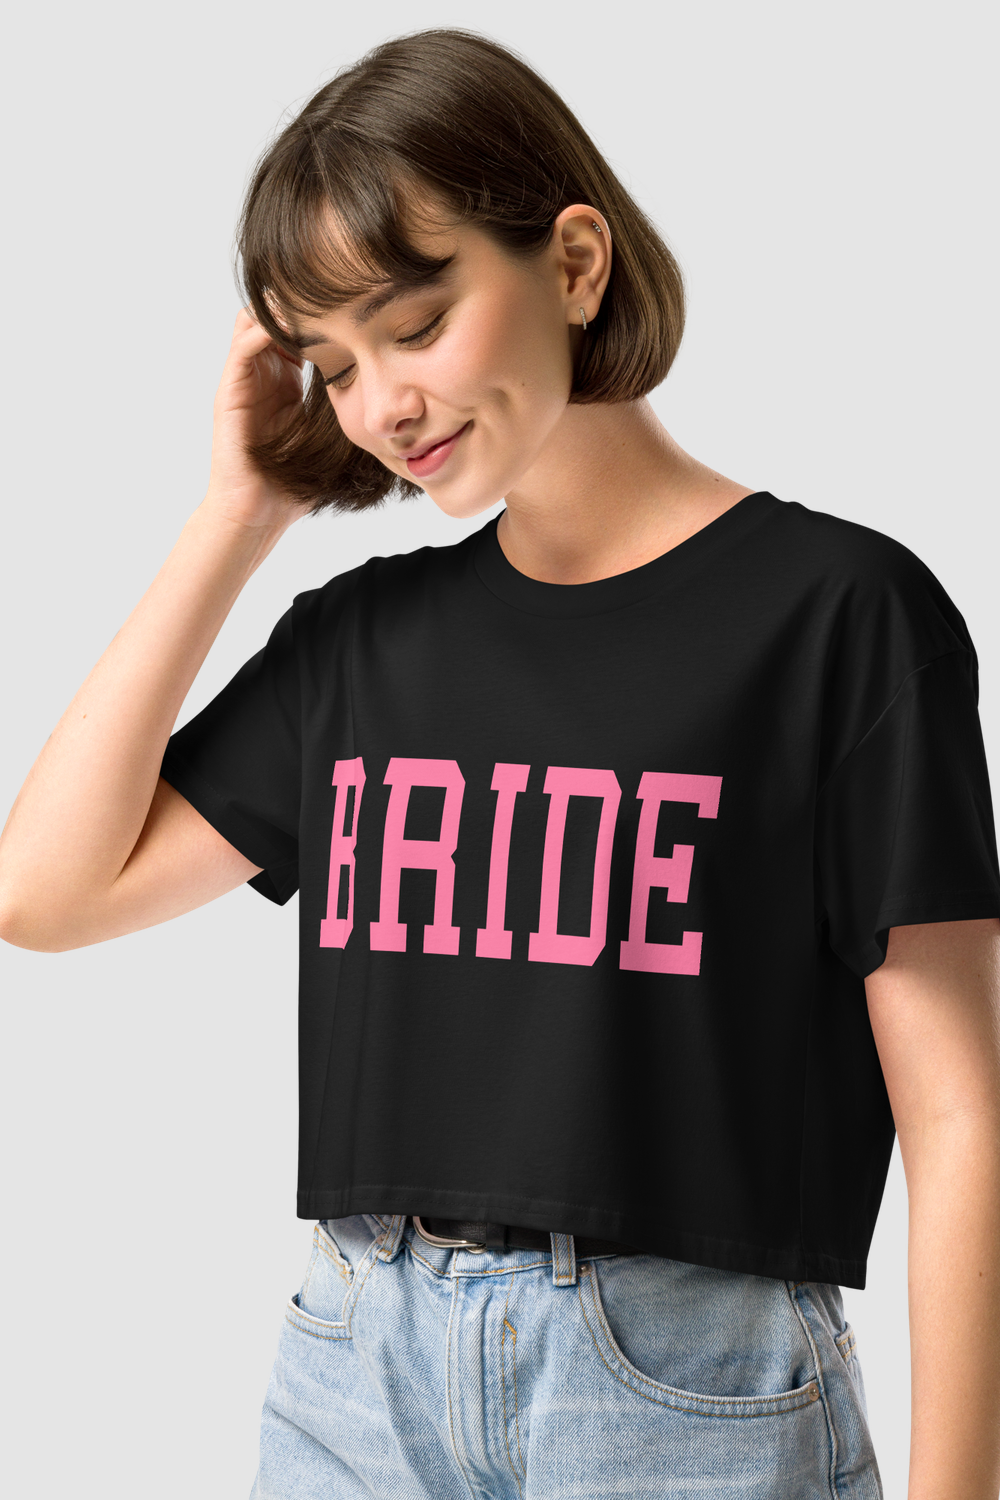 Big Bride Text Women's Relaxed Crop Top T-Shirt